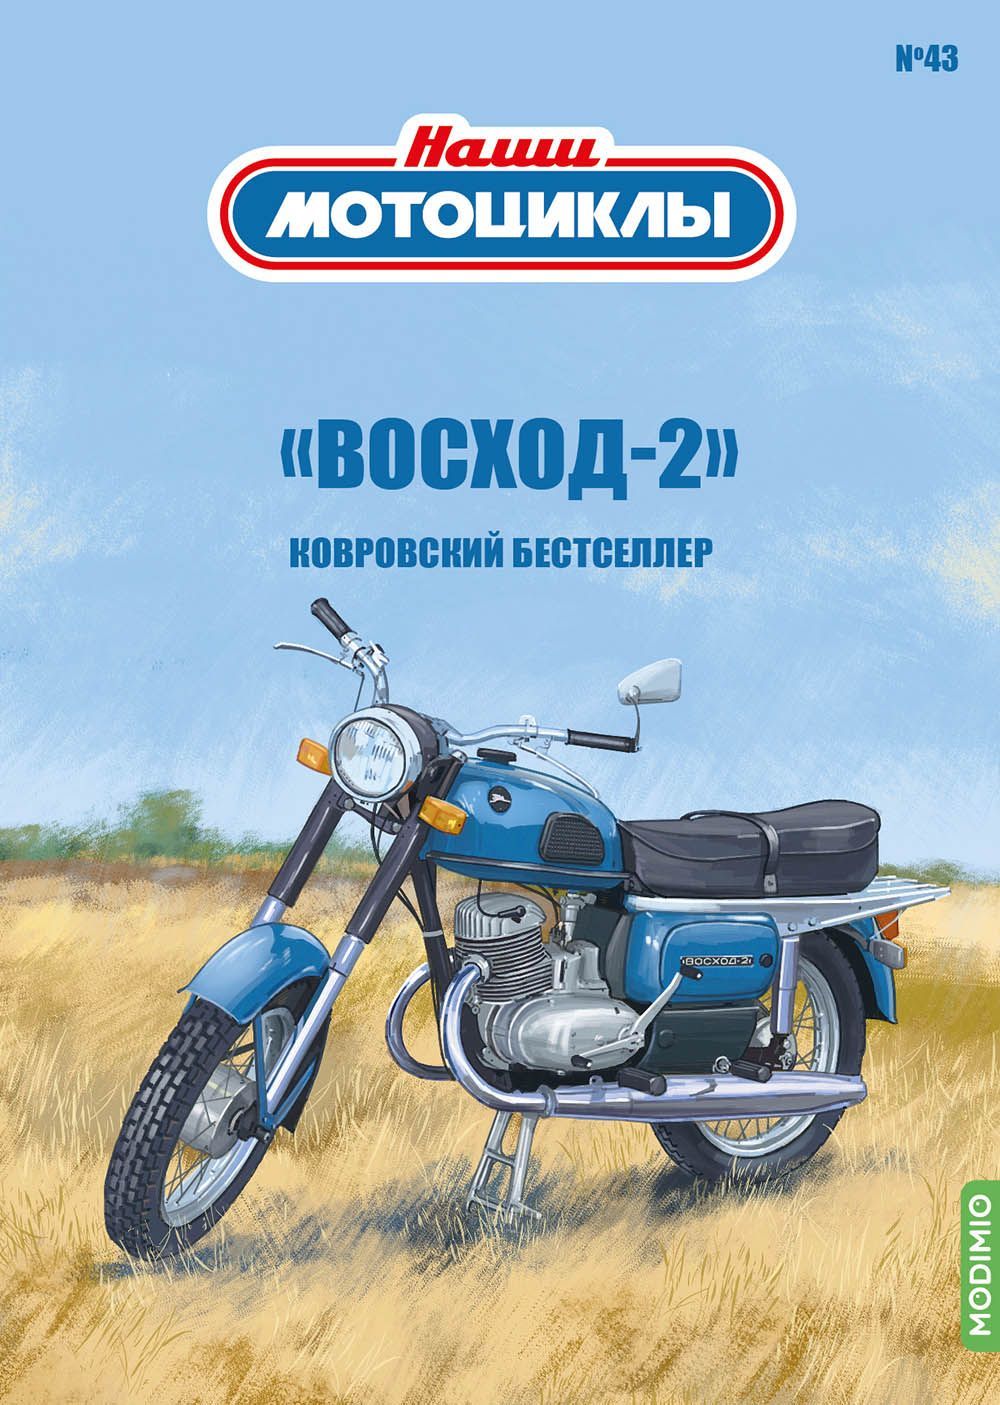 Трицикл своими руками | Форум - Мотоцикл Восход, ЗиД, Сова и Минск (ММВЗ)